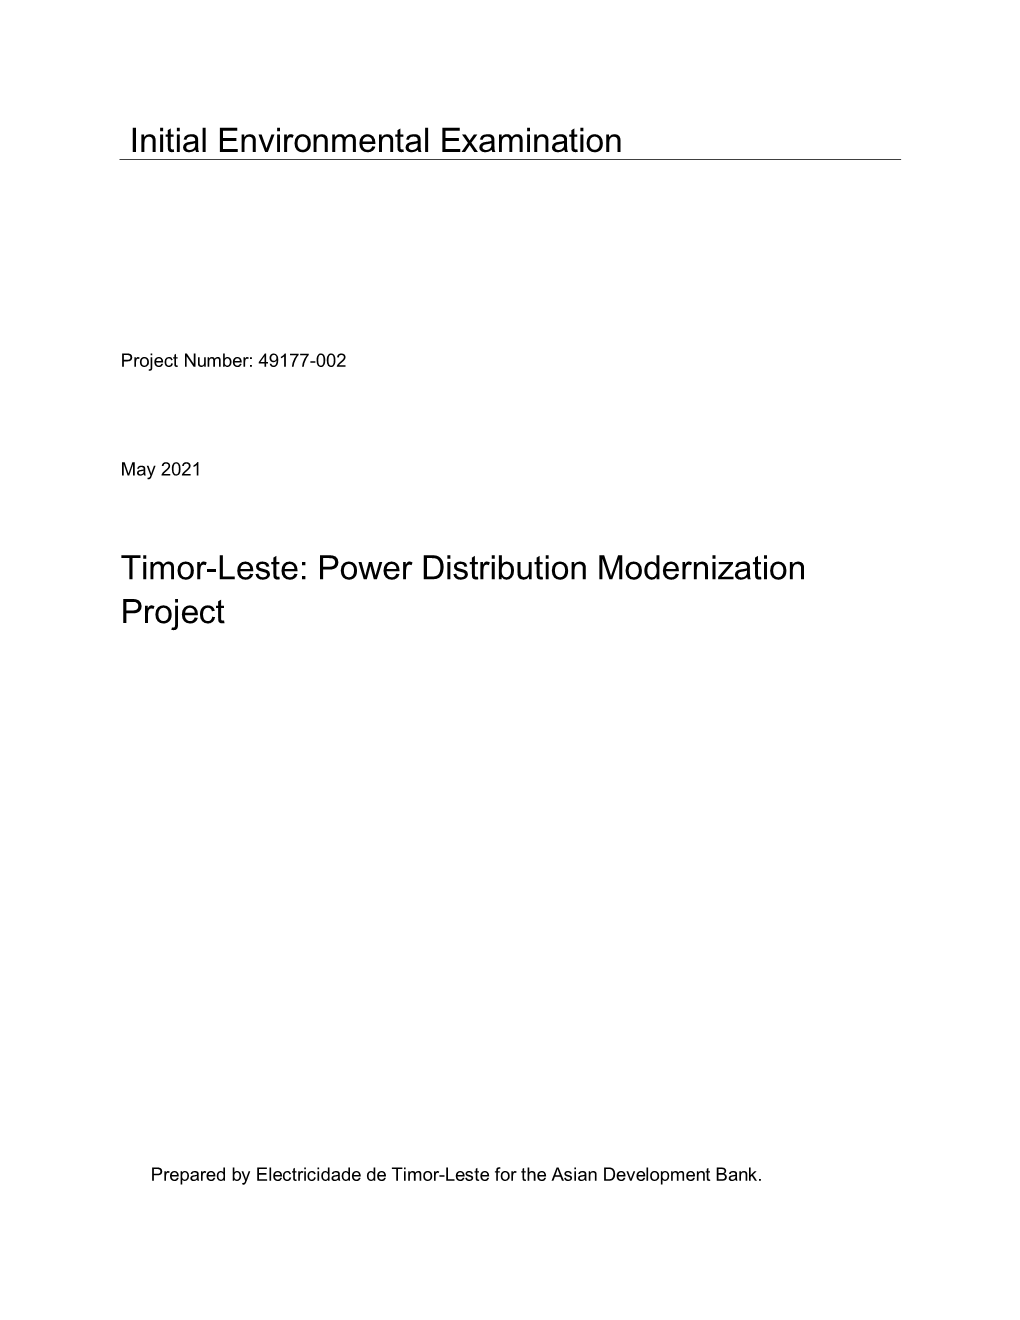 49177-002: Power Distribution Modernization Project